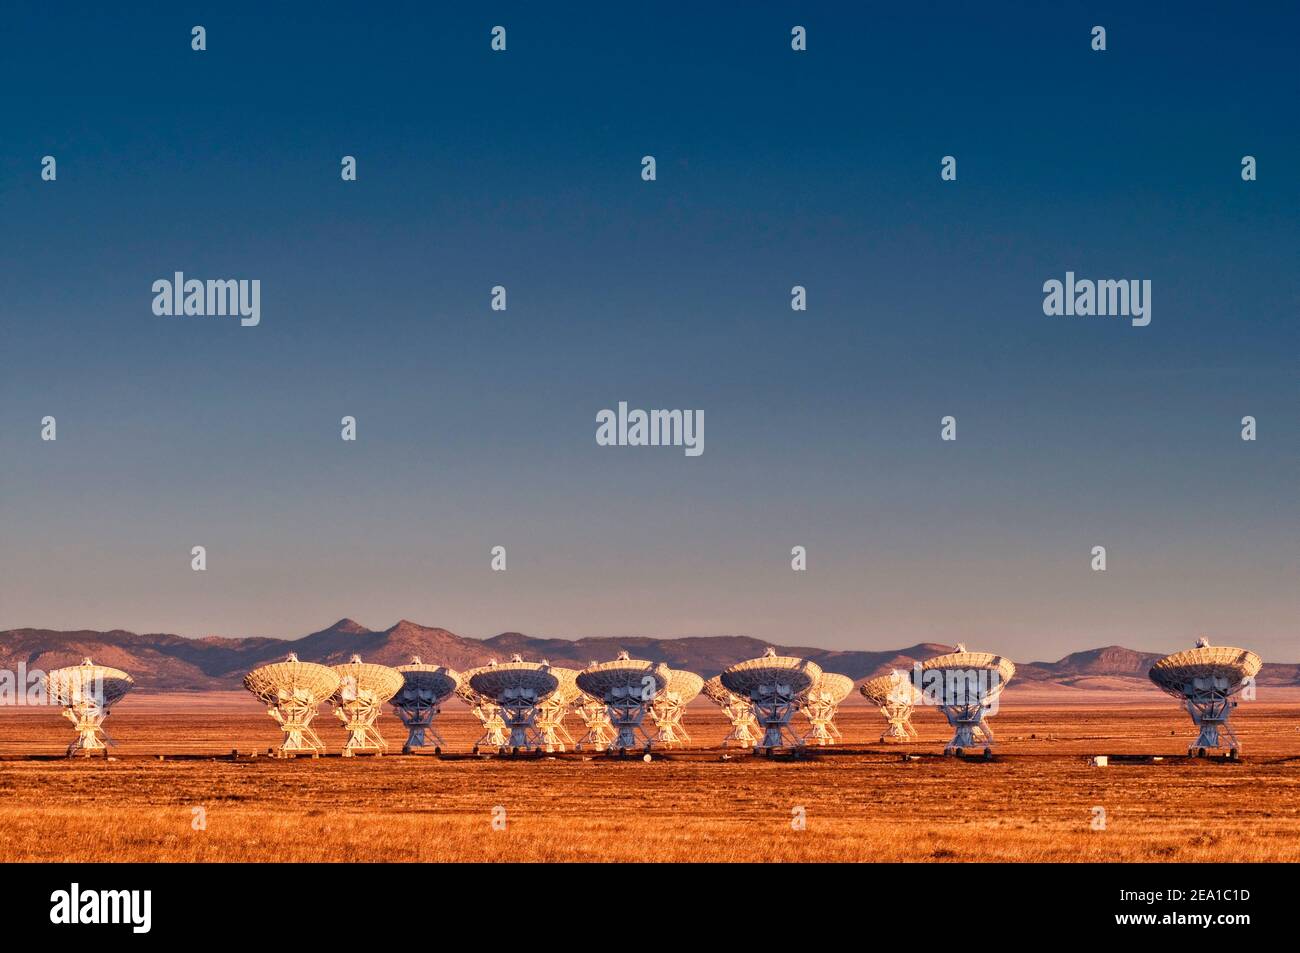 Antenne di un telescopio radio ad array molto grande (VLA), un osservatorio di radioastronomia situato sulle pianure di San Agustin, vicino a Datil, New Mexico, USA Foto Stock